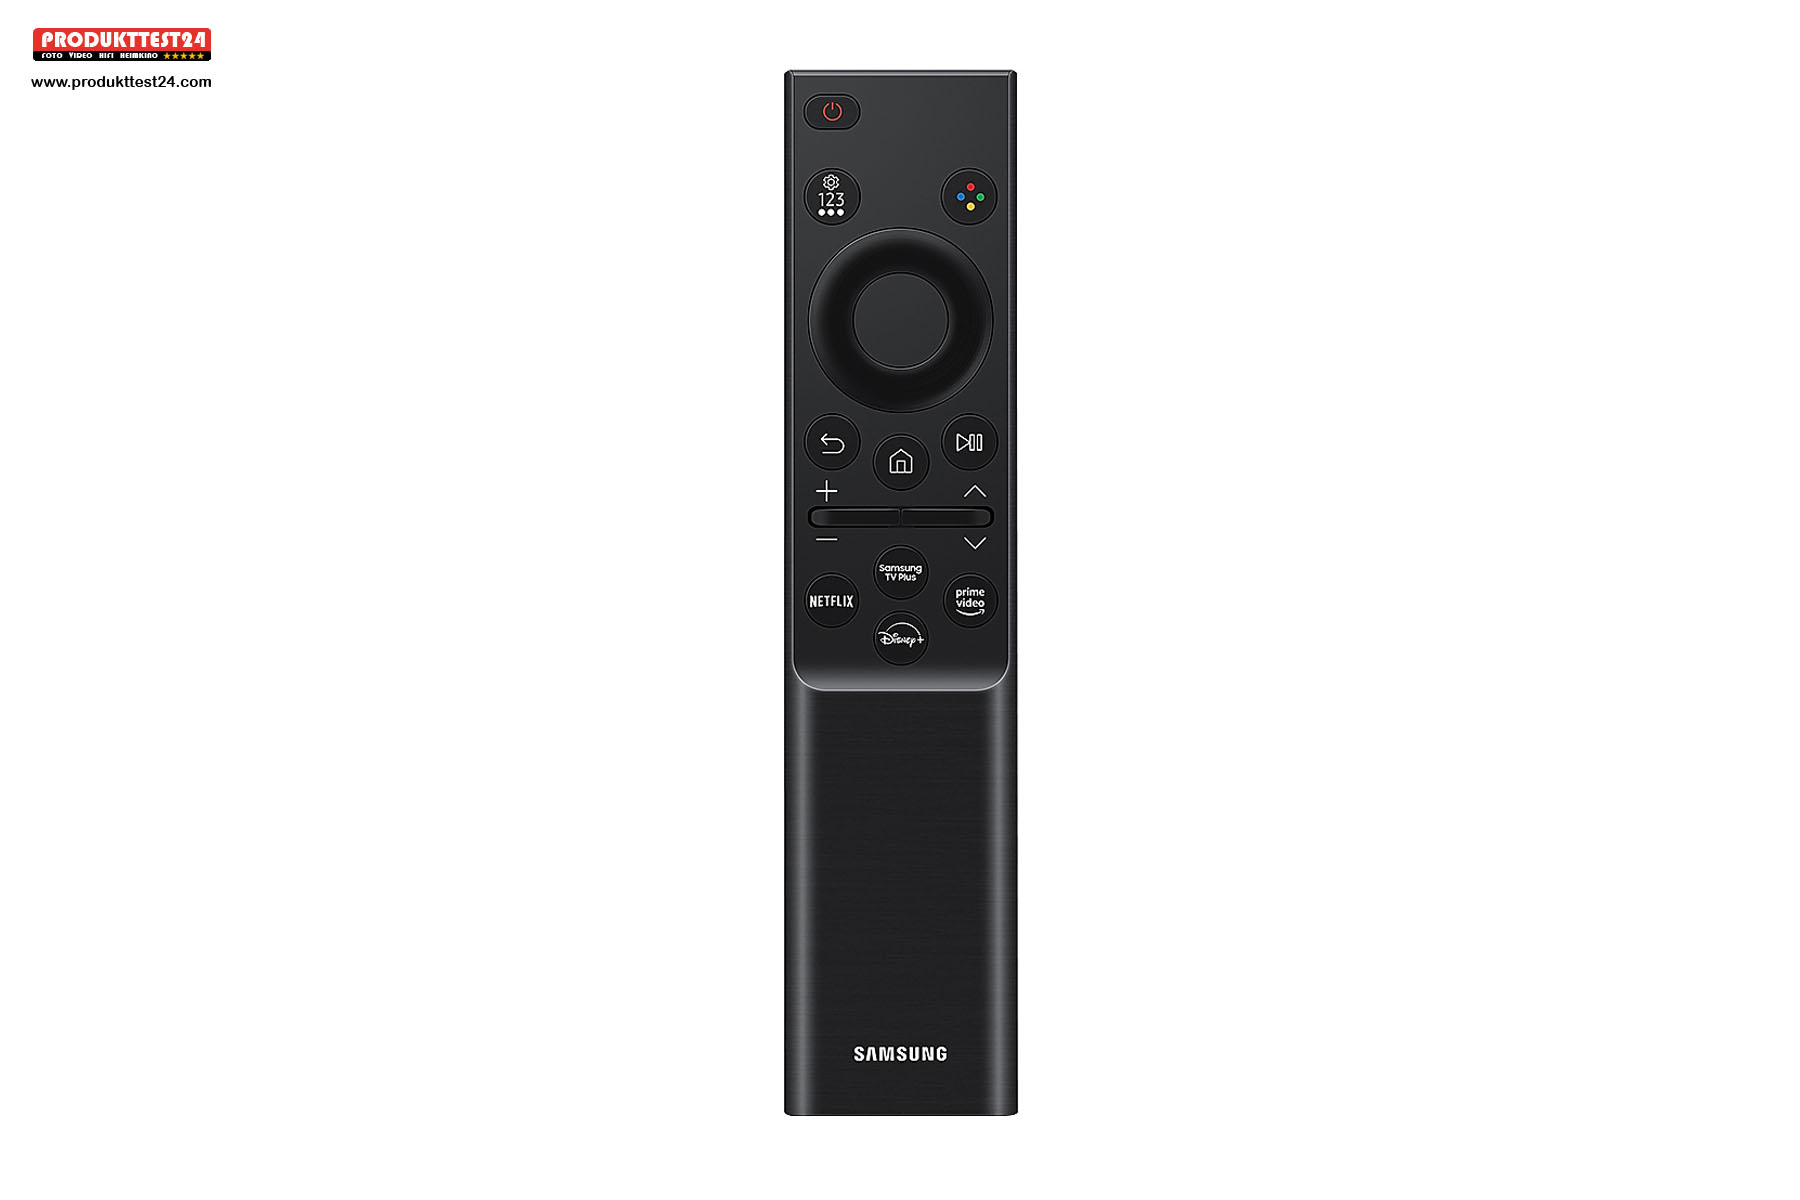 Die Smart Remote Control hat eigene Tasten für Streamingdienste.